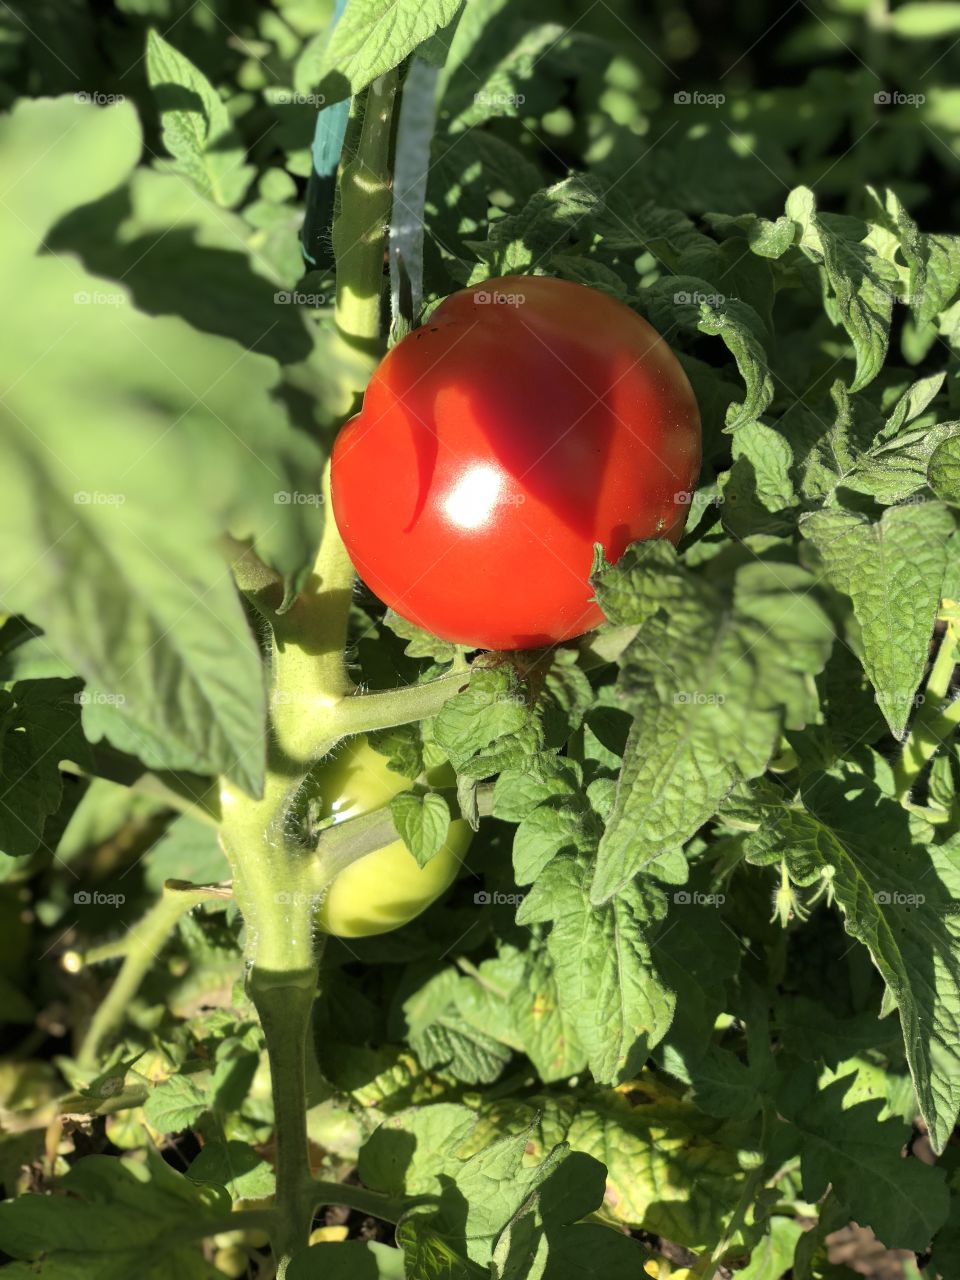 Ripe garden tomato ready to pick 